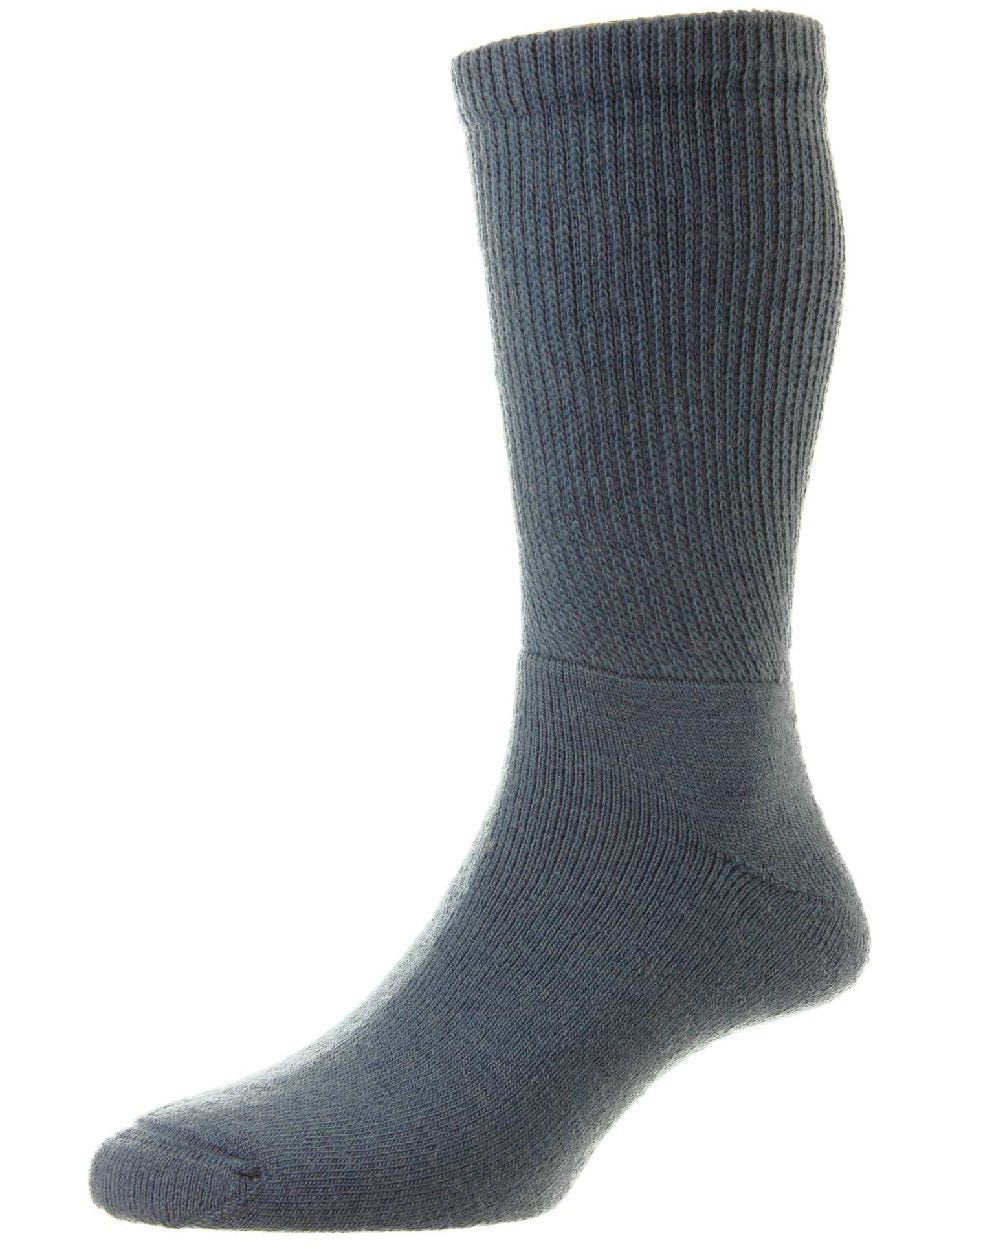 HJ Hall Diabetic Wool Socks in Airforce 